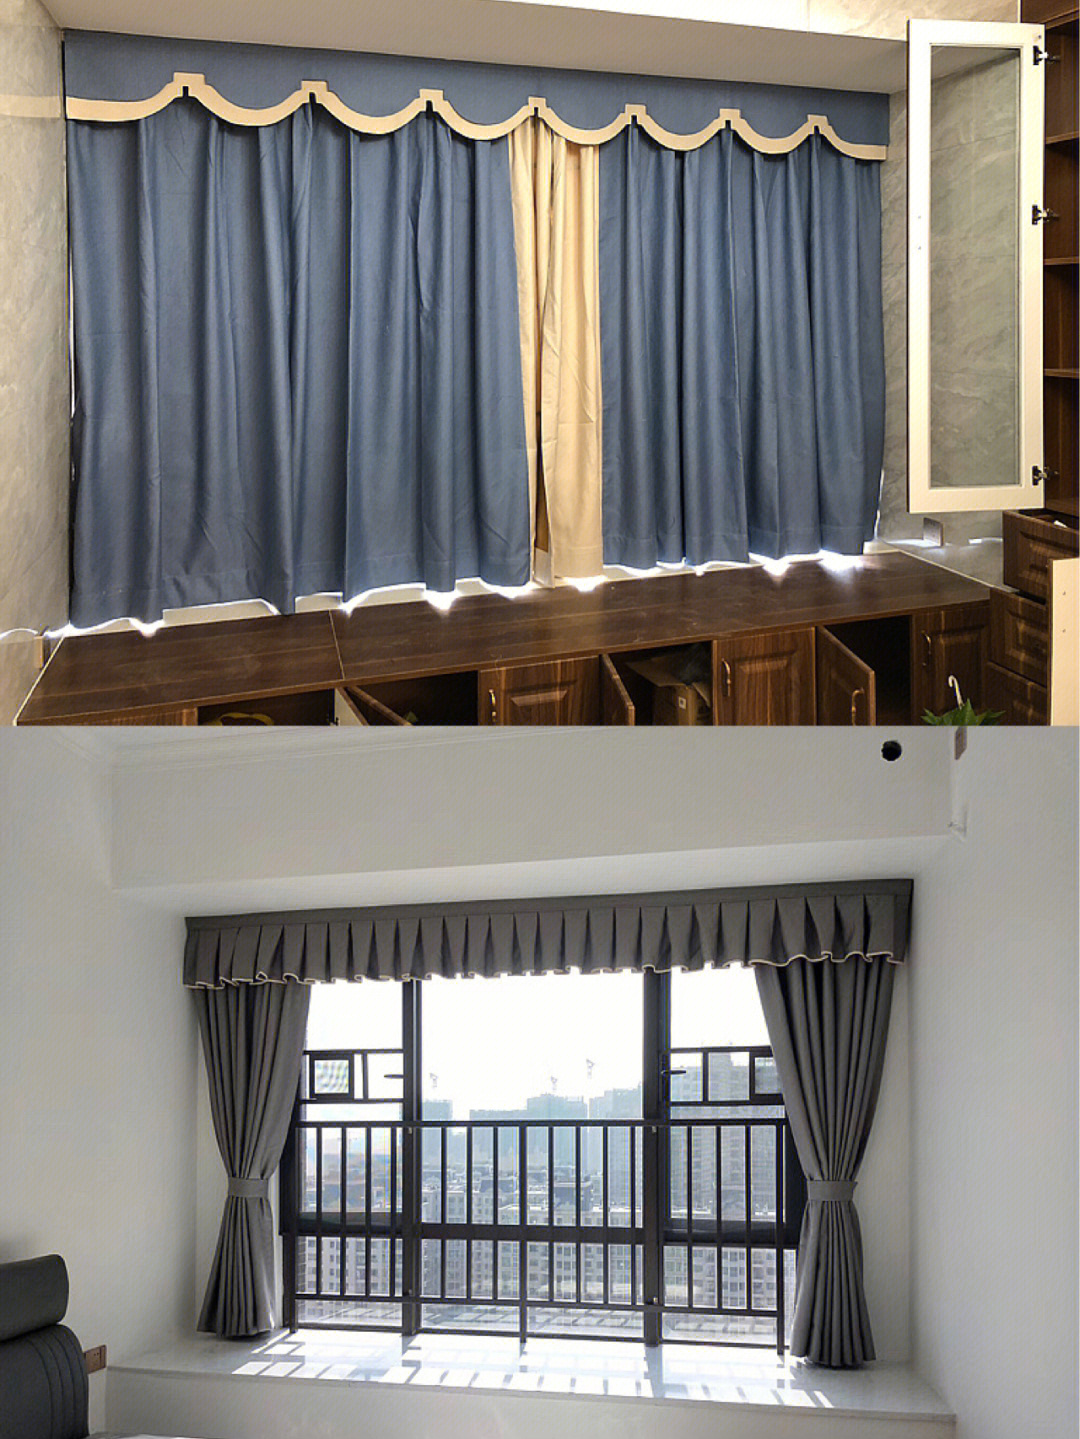 帘头可以美化窗帘,能提高软装的整体视觉05同时还可以遮挡窗帘轨道